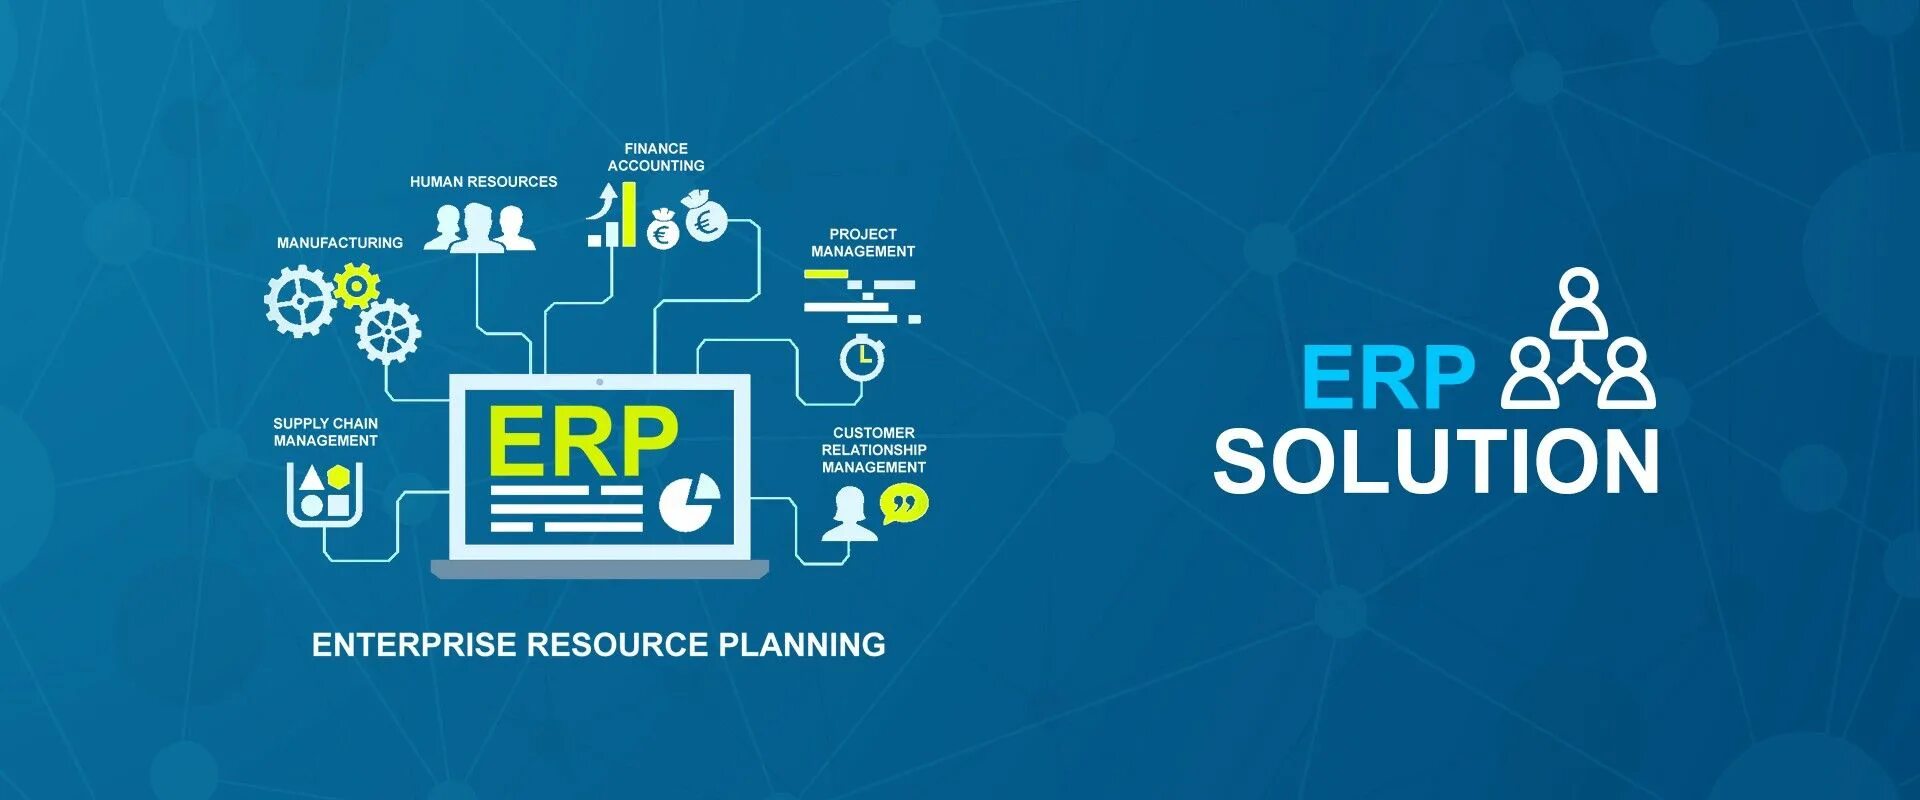 Enterprise system. ERP-система. Внедрение ERP системы. ERP (Enterprise resource planning). Планирование ресурсов (ERP).